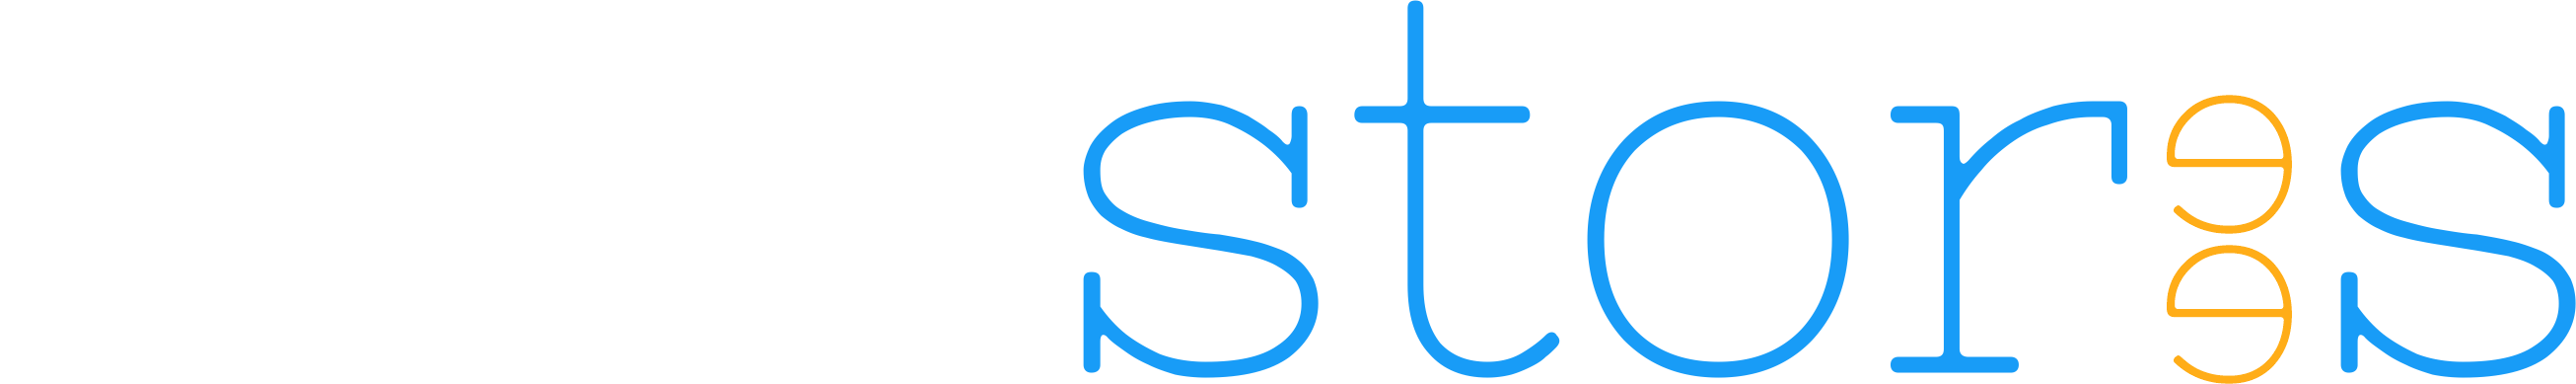 Suite Storees White logo